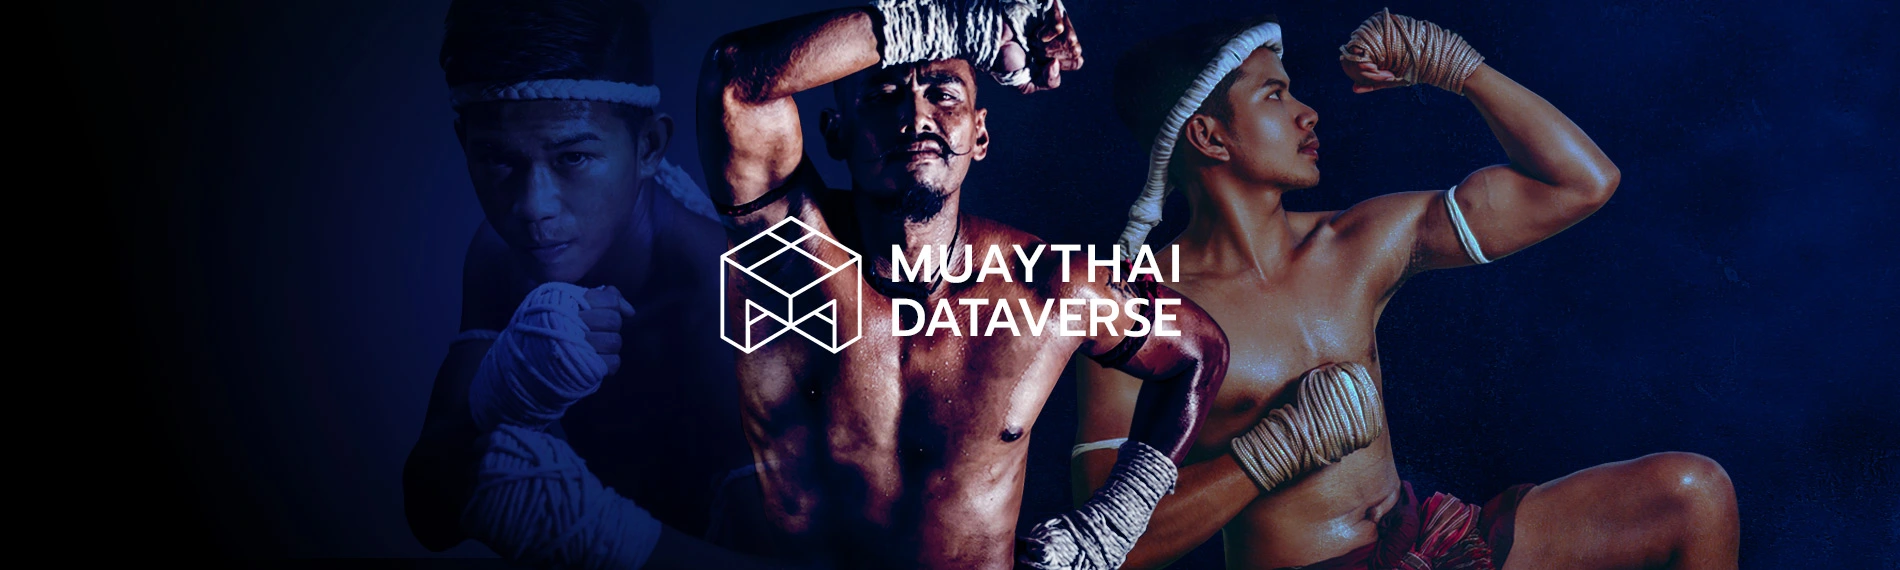 MUAYTHAI Dataverse